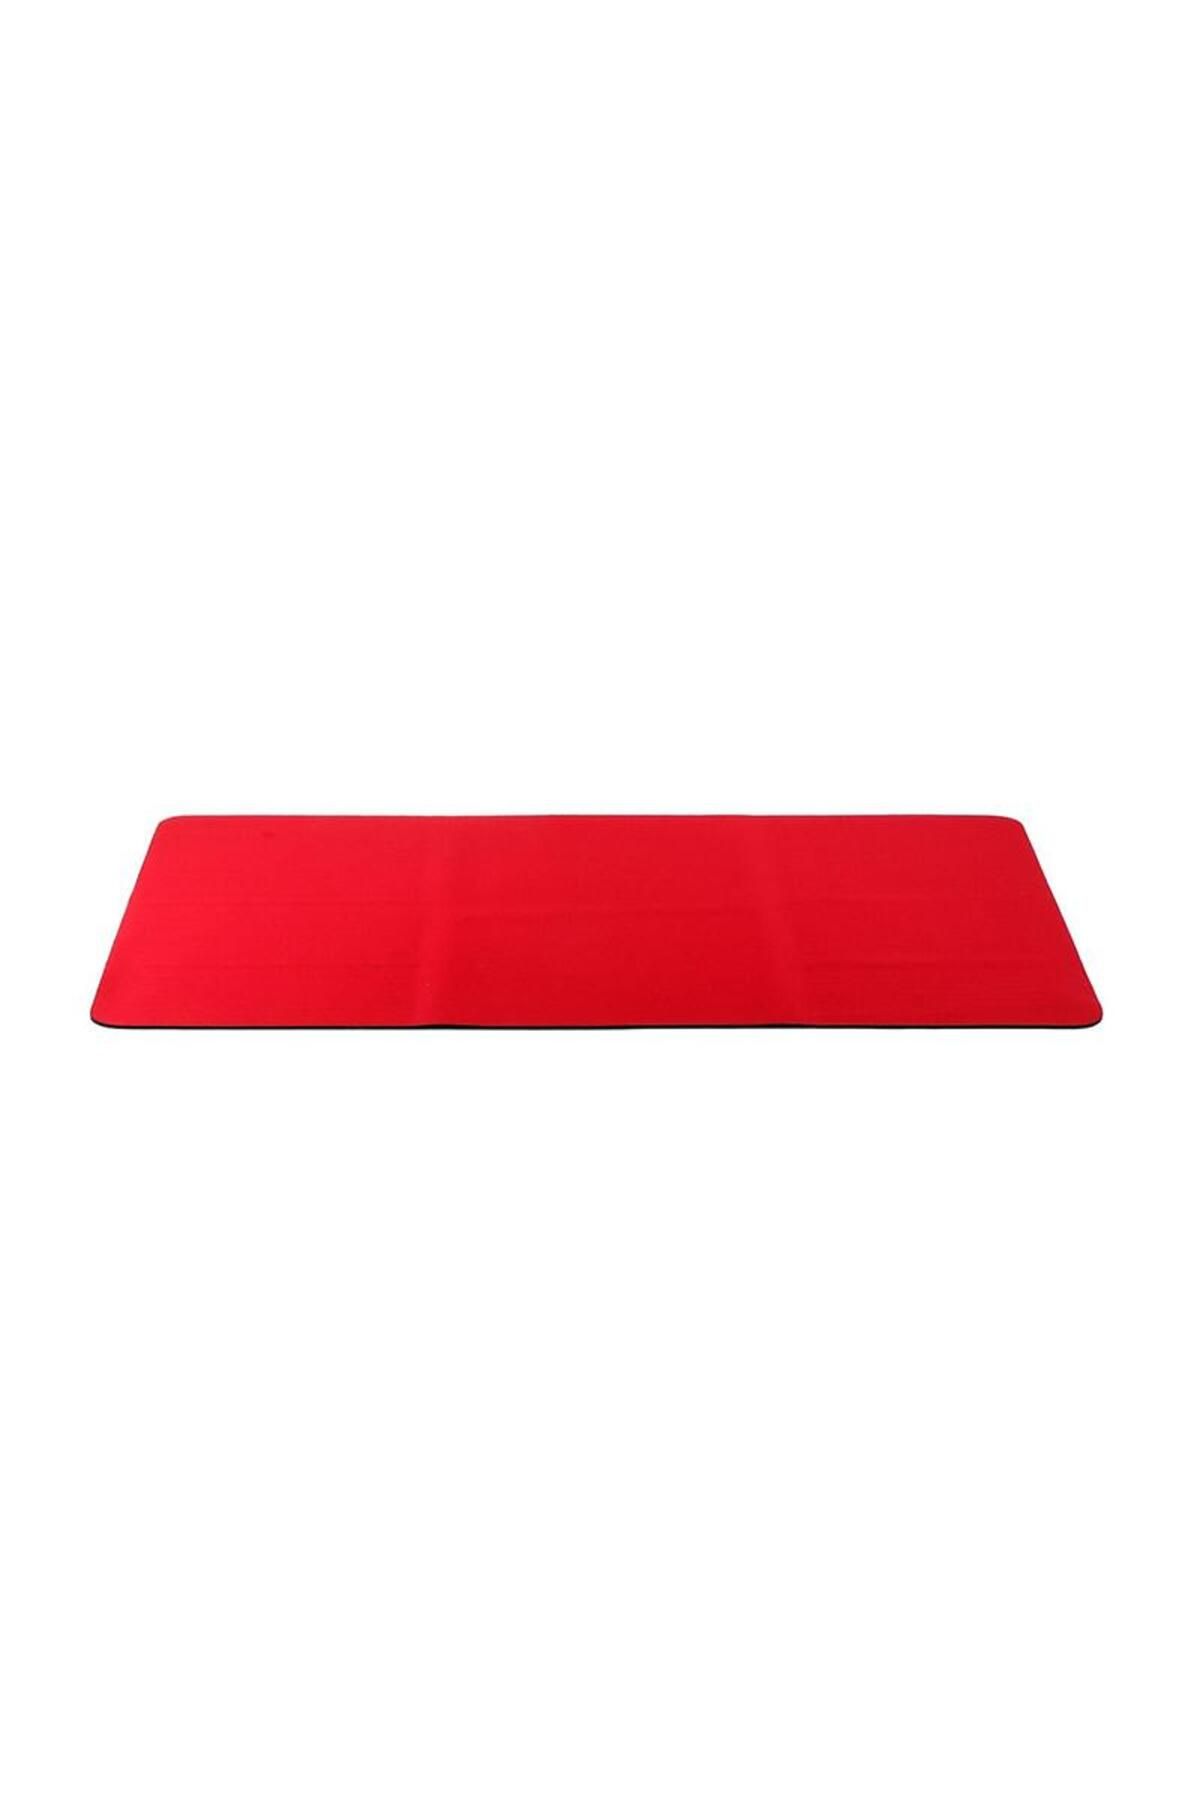 Elit Elitstore 500 Mouse Pad Kırmızı (500x300x2)